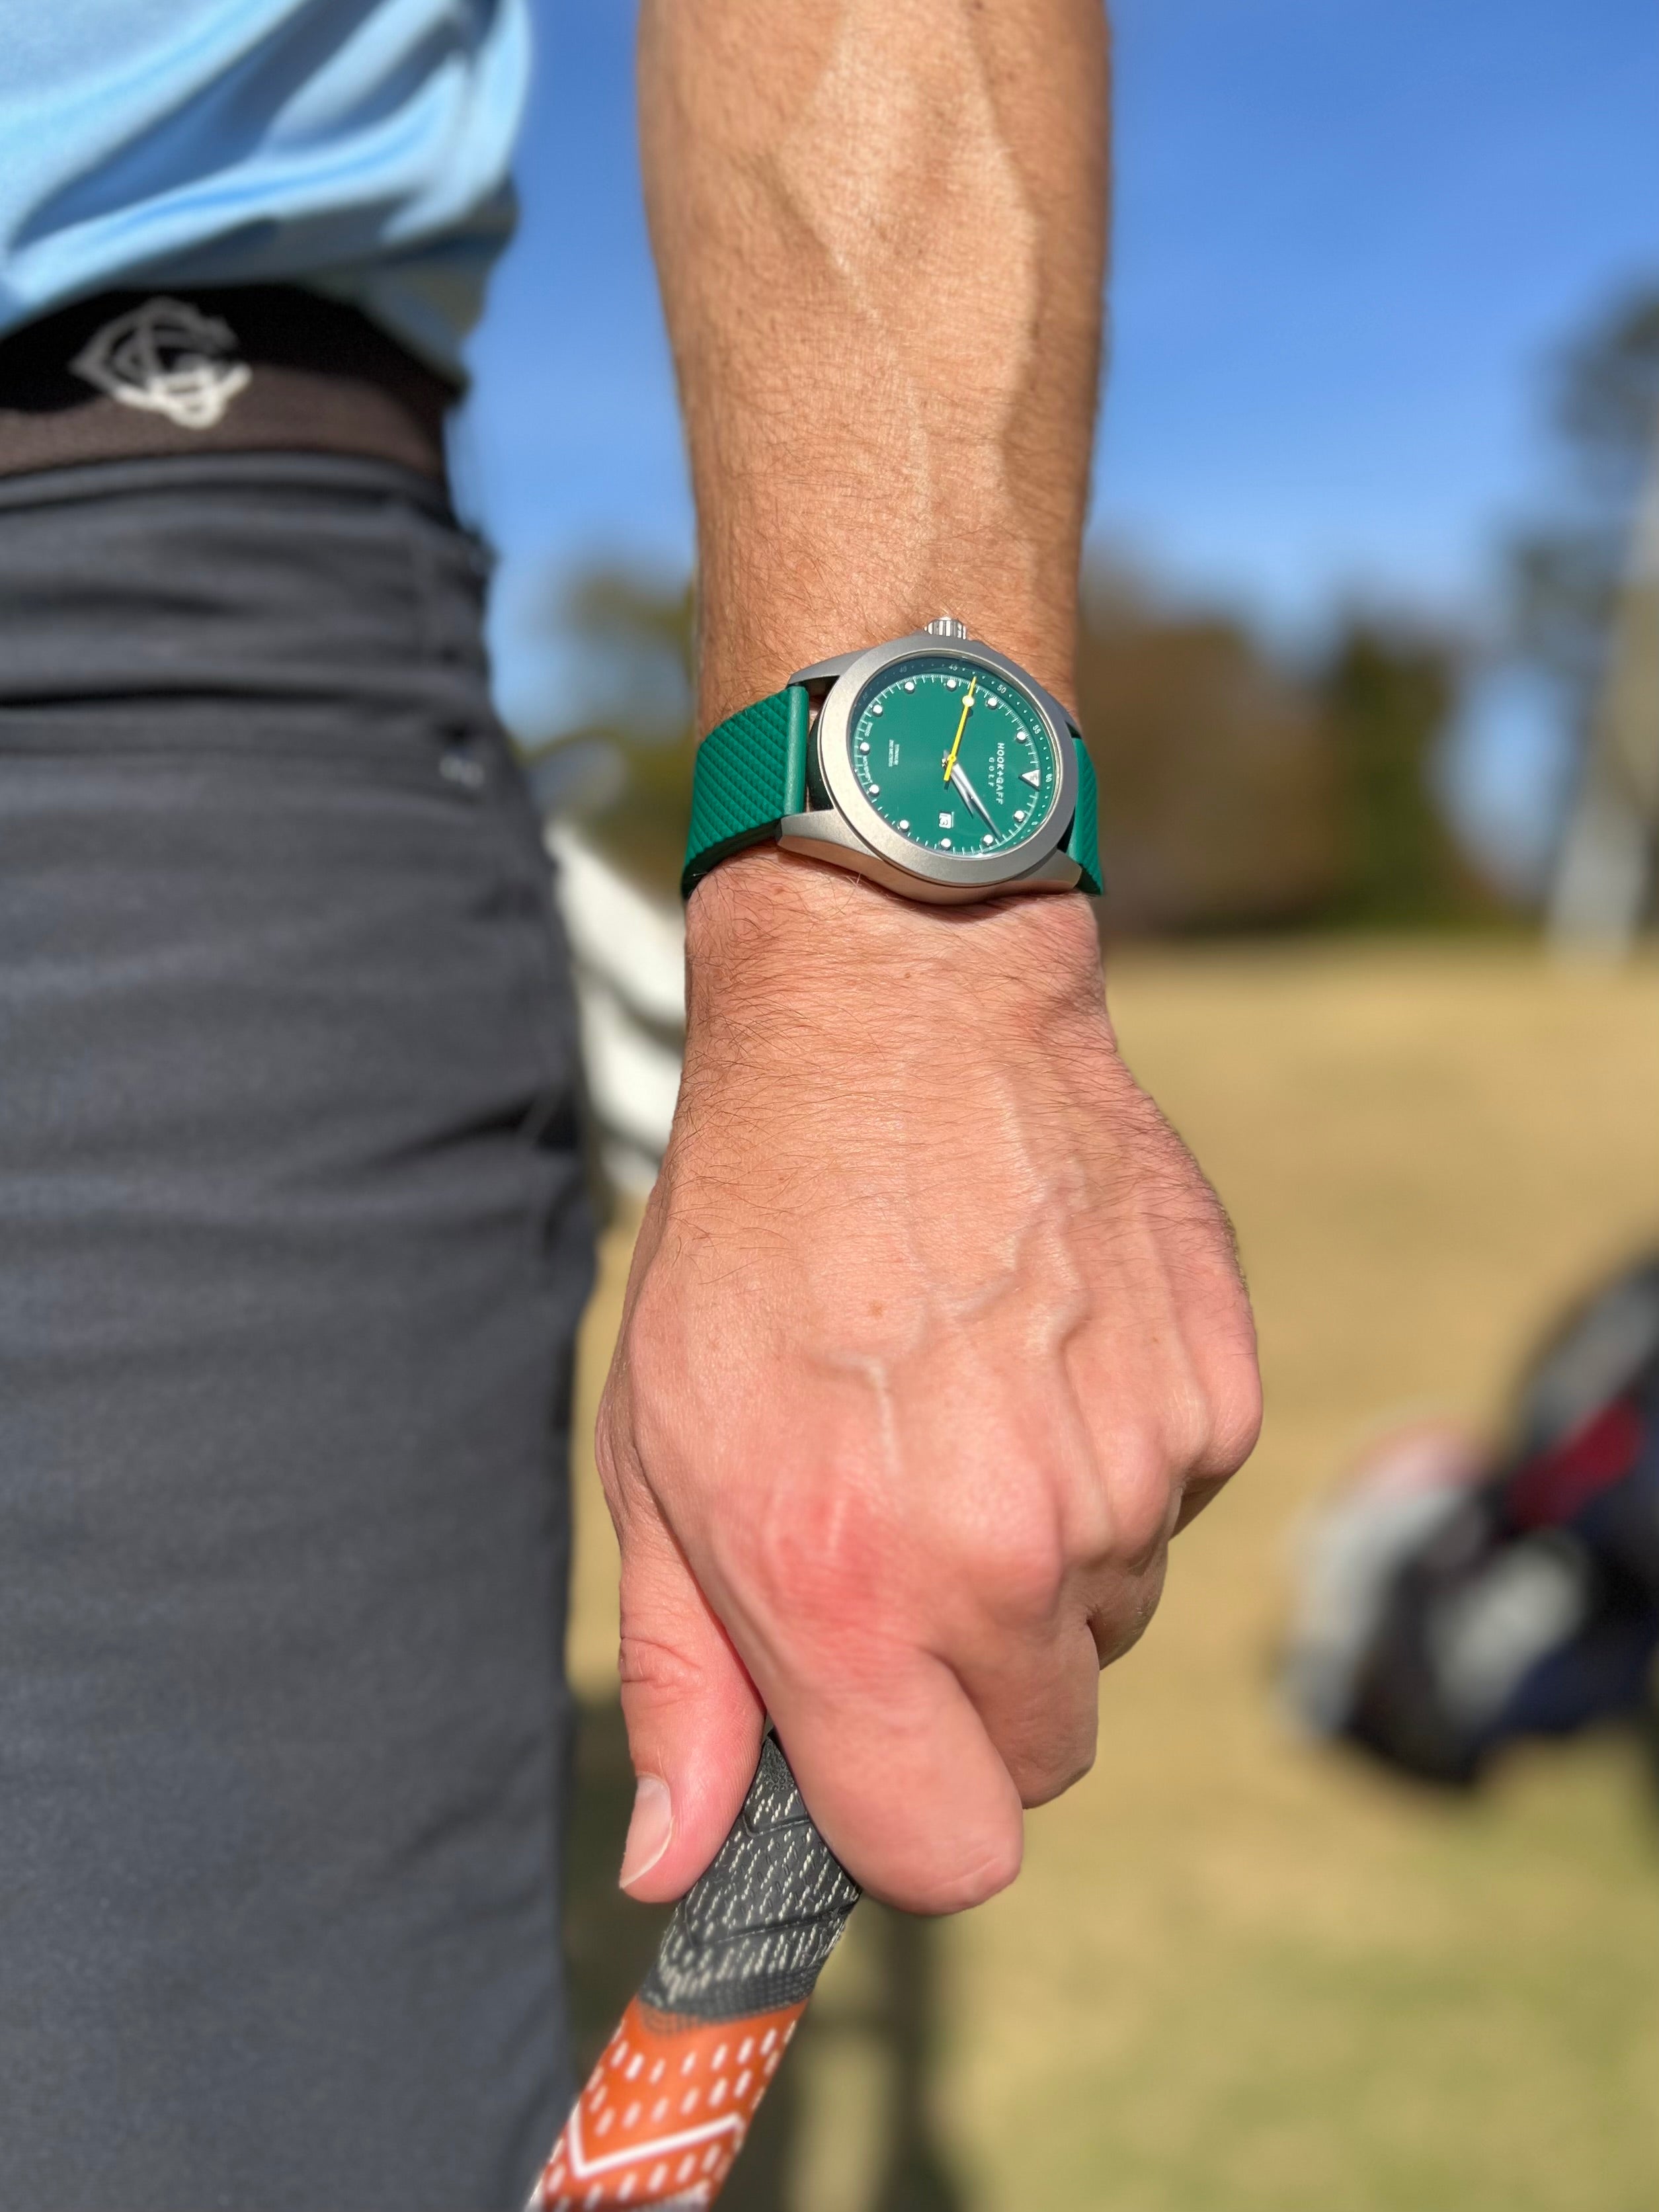 NEW! Golf Watch - Green Dial